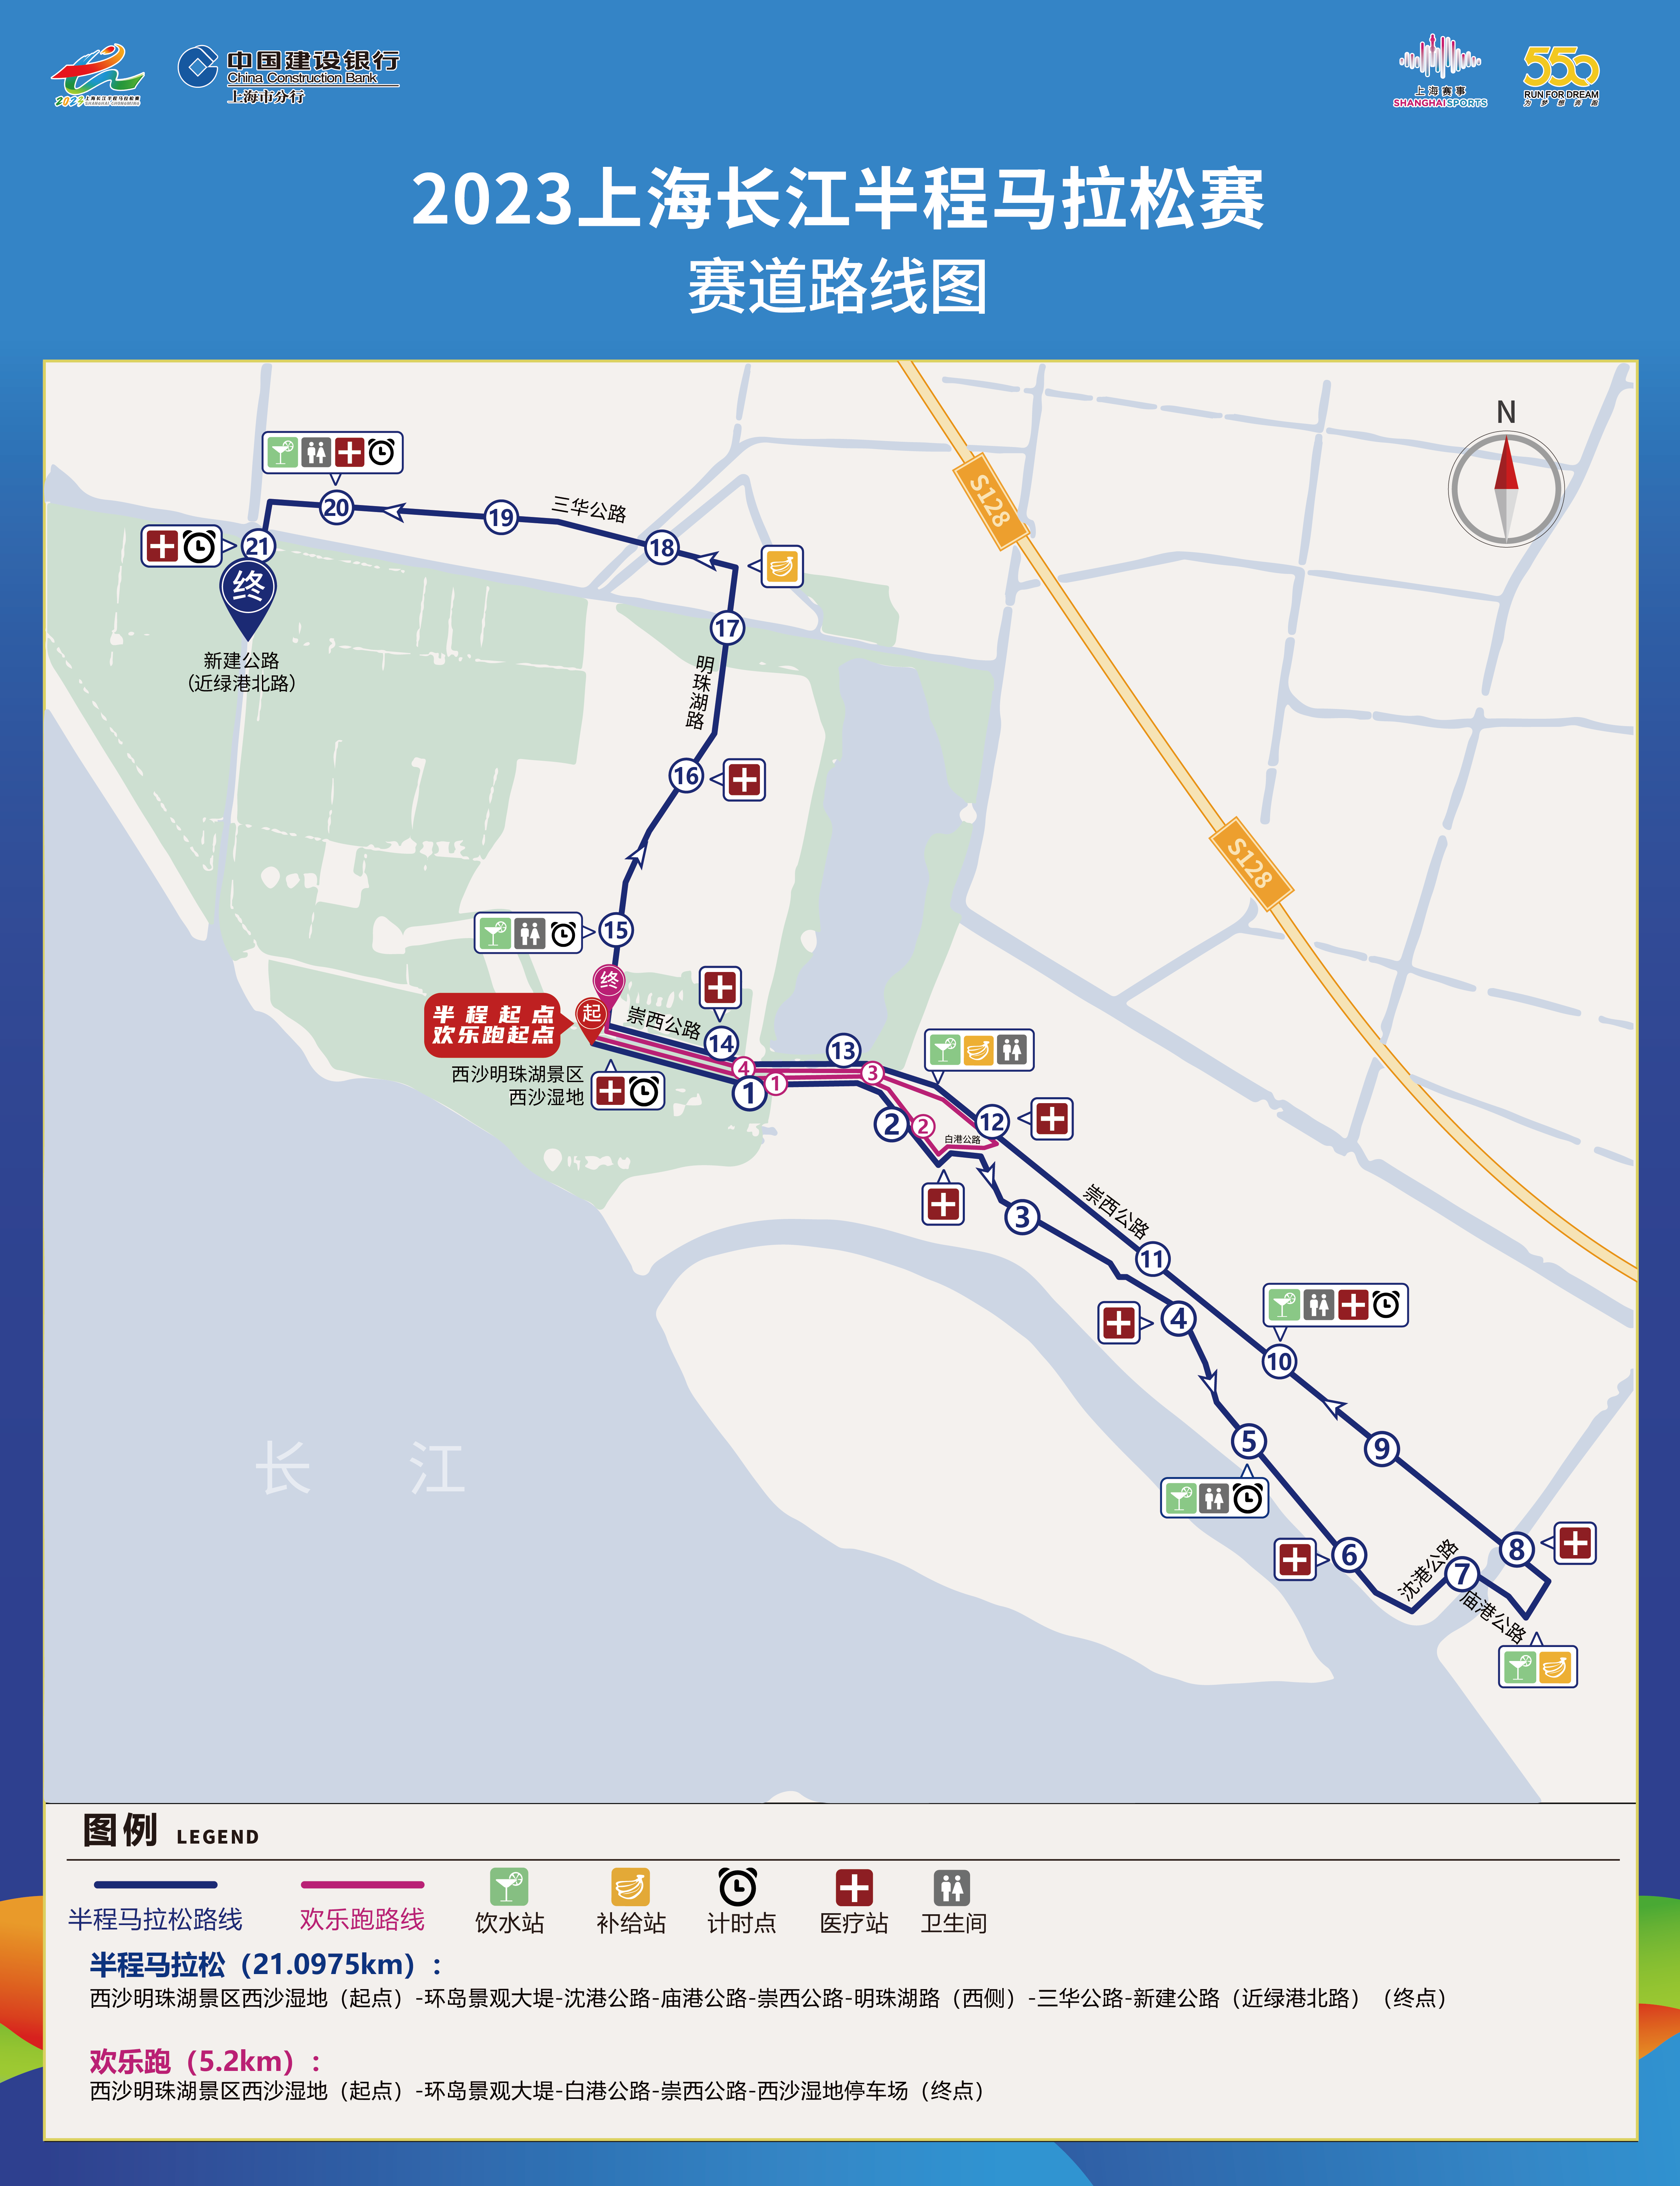 2023上海長江半程馬拉松賽